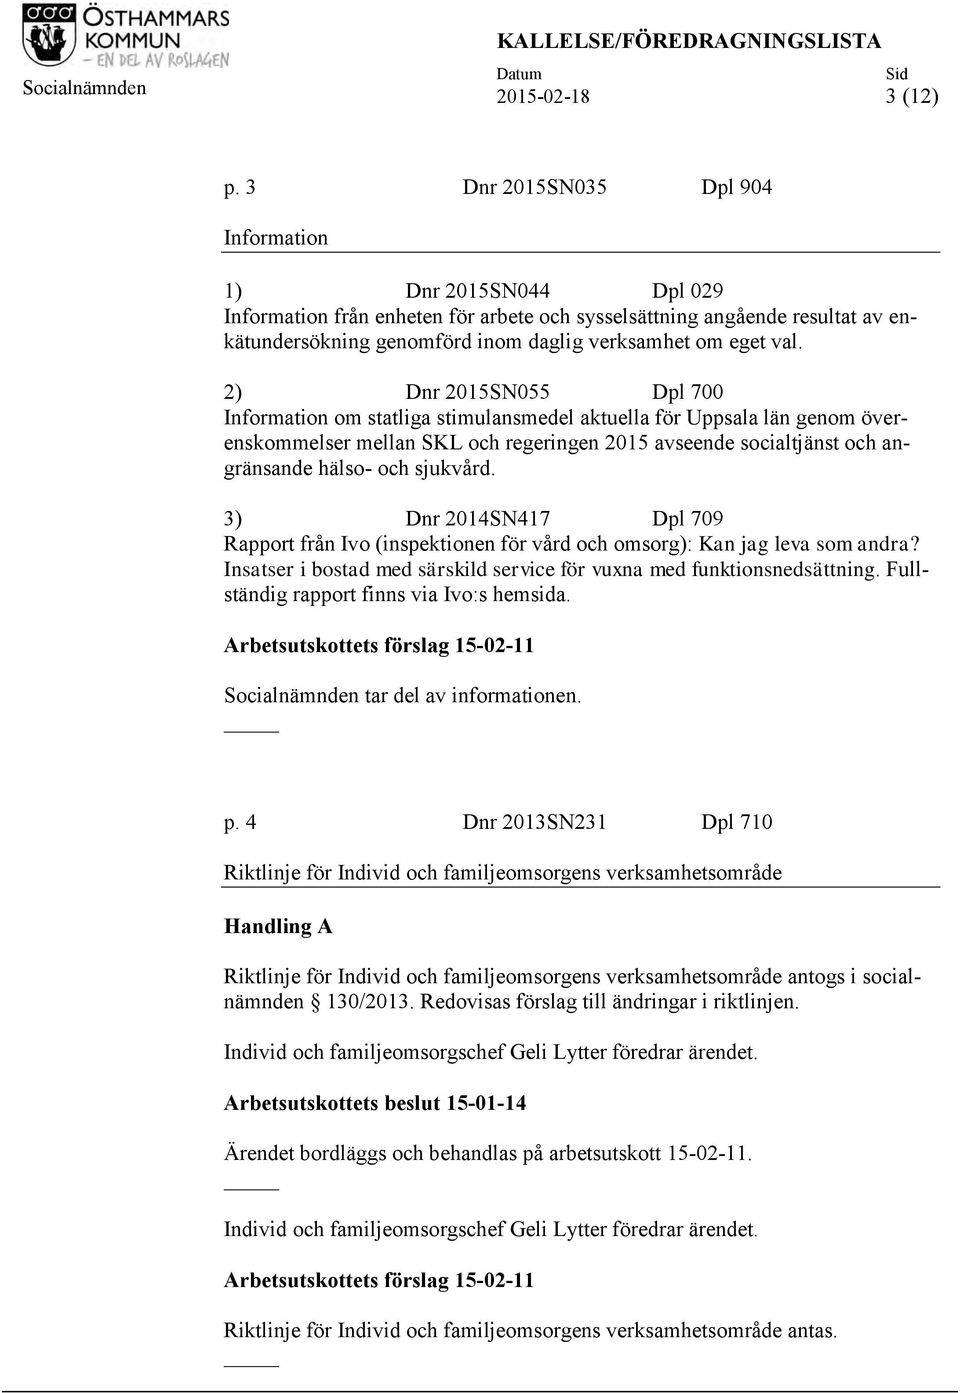 2) Dnr 2015SN055 Dpl 700 Information om statliga stimulansmedel aktuella för Uppsala län genom överenskommelser mellan SKL och regeringen 2015 avseende socialtjänst och angränsande hälso- och